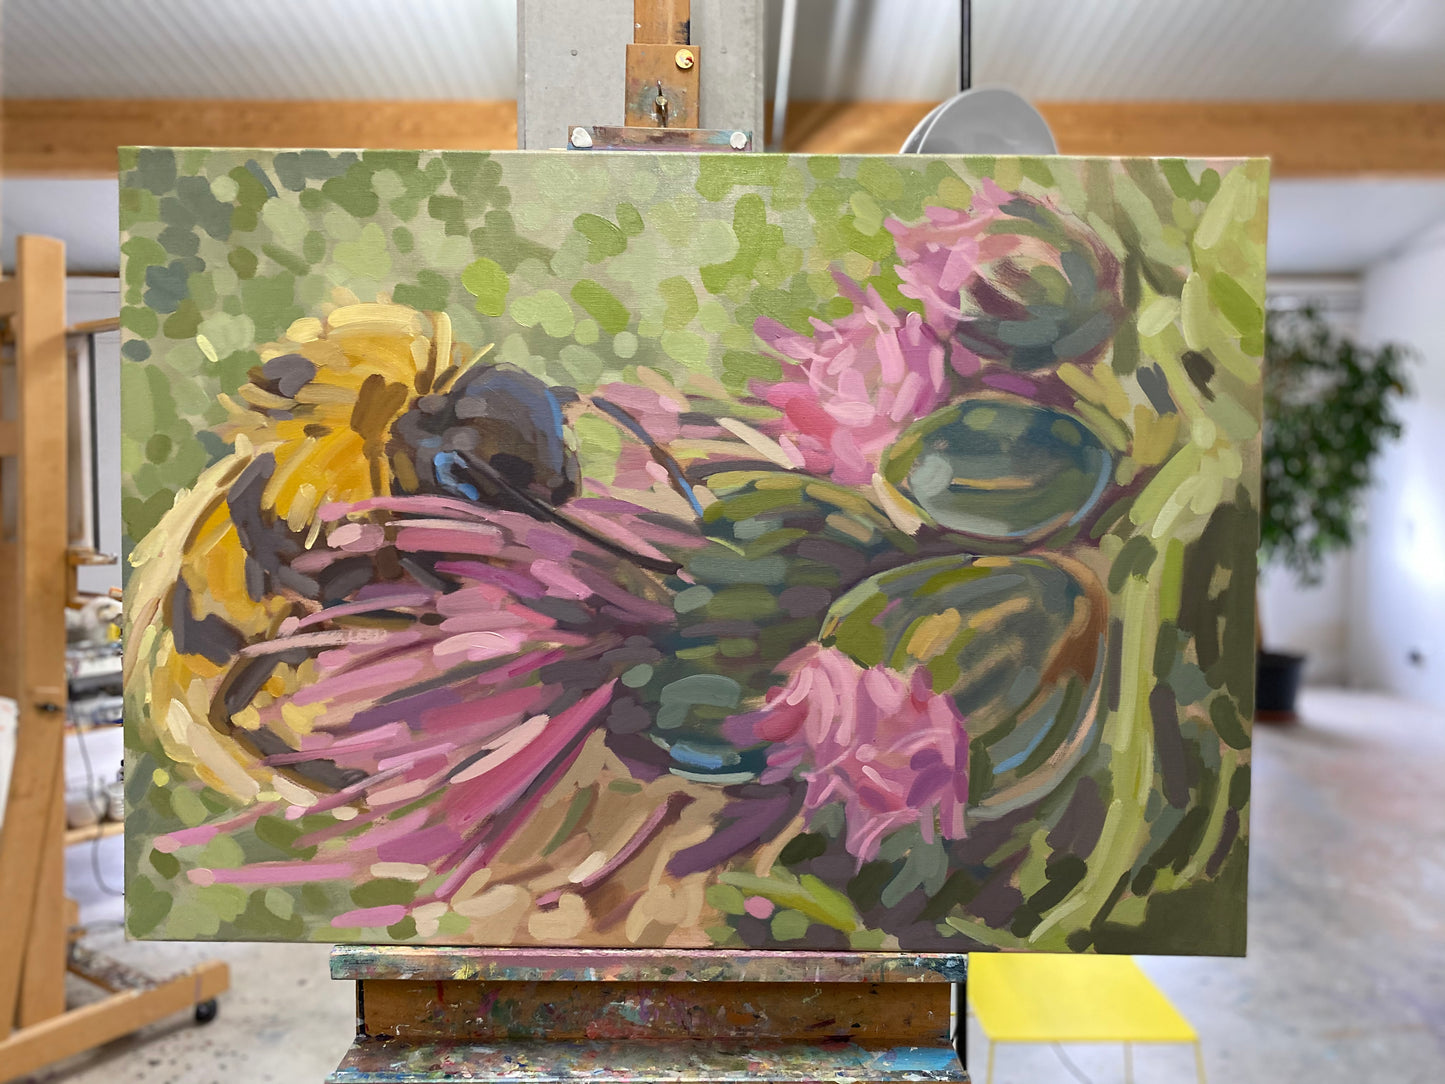 2020, bumblebees, 100 x 70 cm